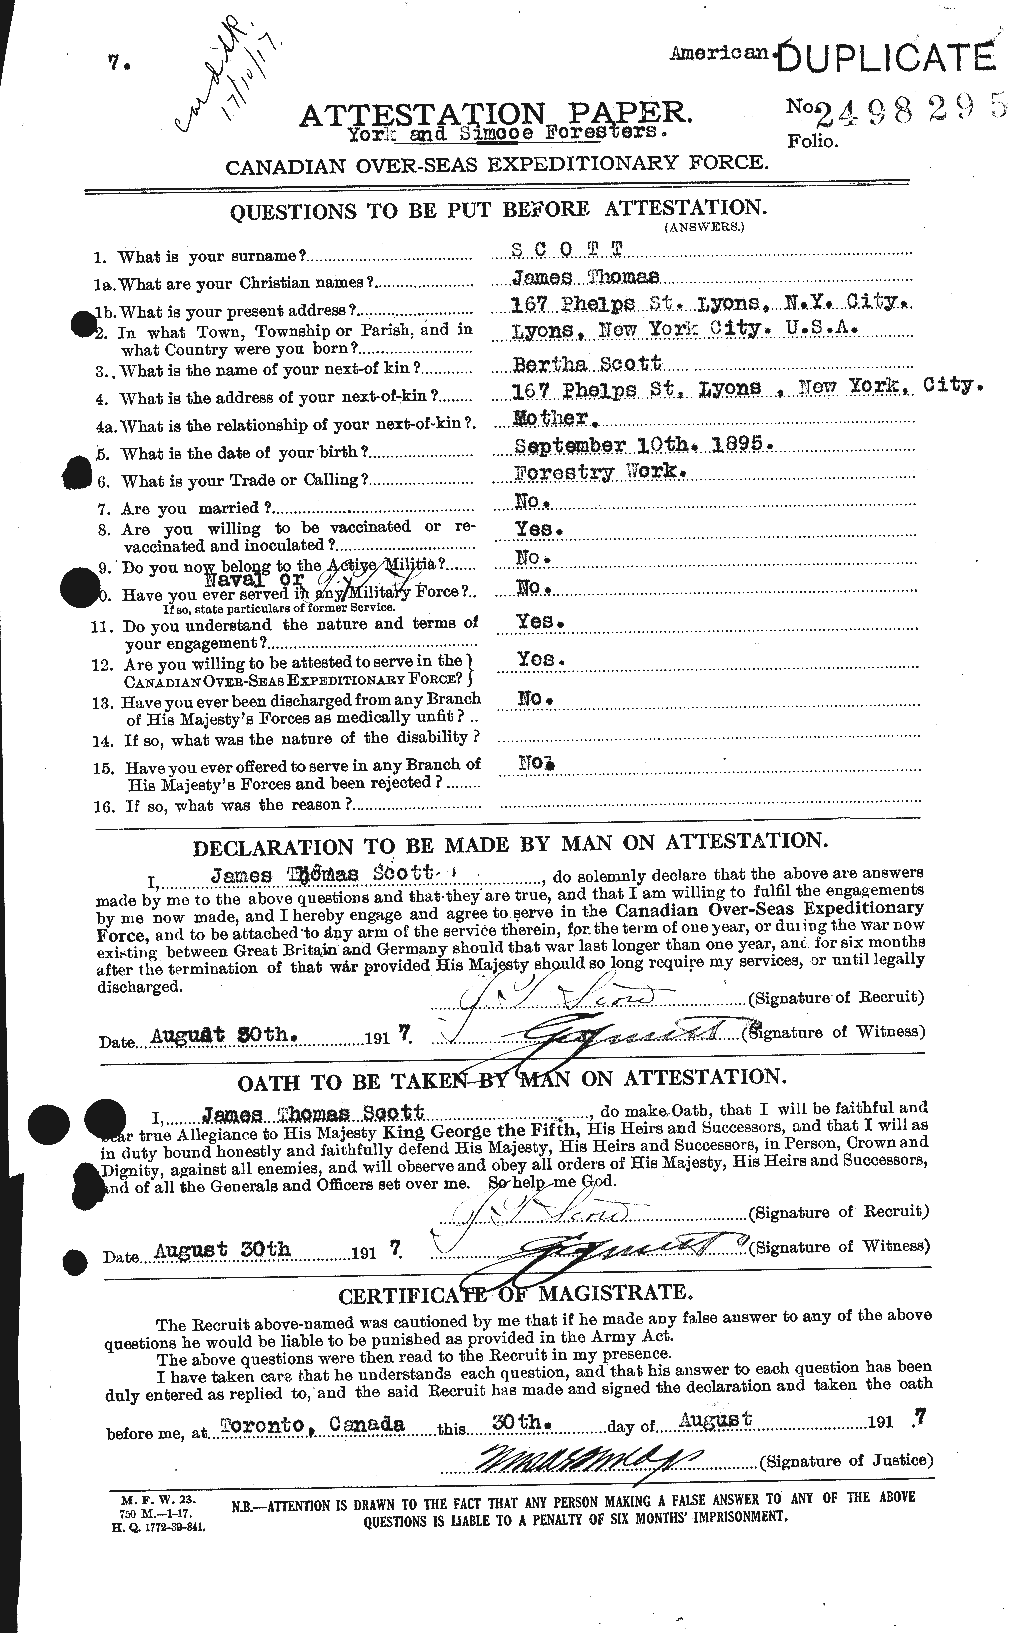 Dossiers du Personnel de la Première Guerre mondiale - CEC 085174a